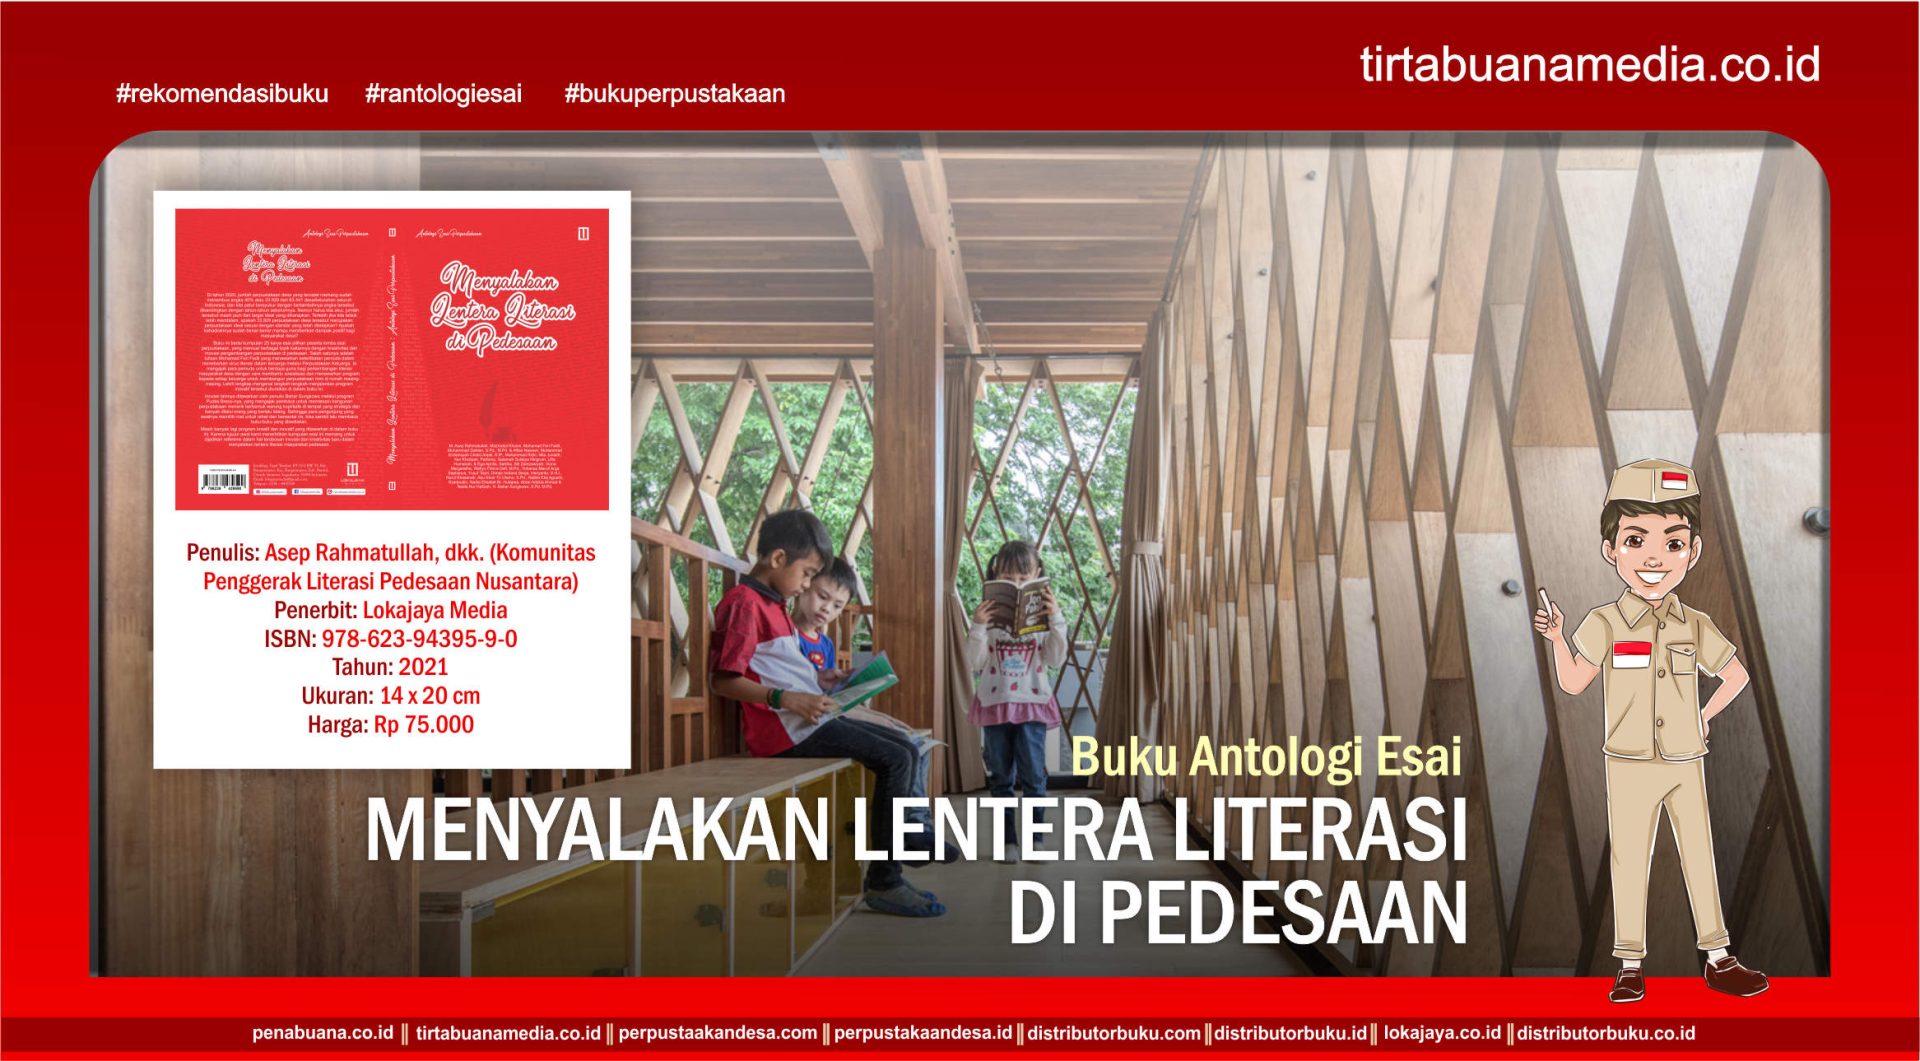 Buku Antologi Esai tentang Perpustakaan Menyalakan Lentera Literasi di Pedesaan